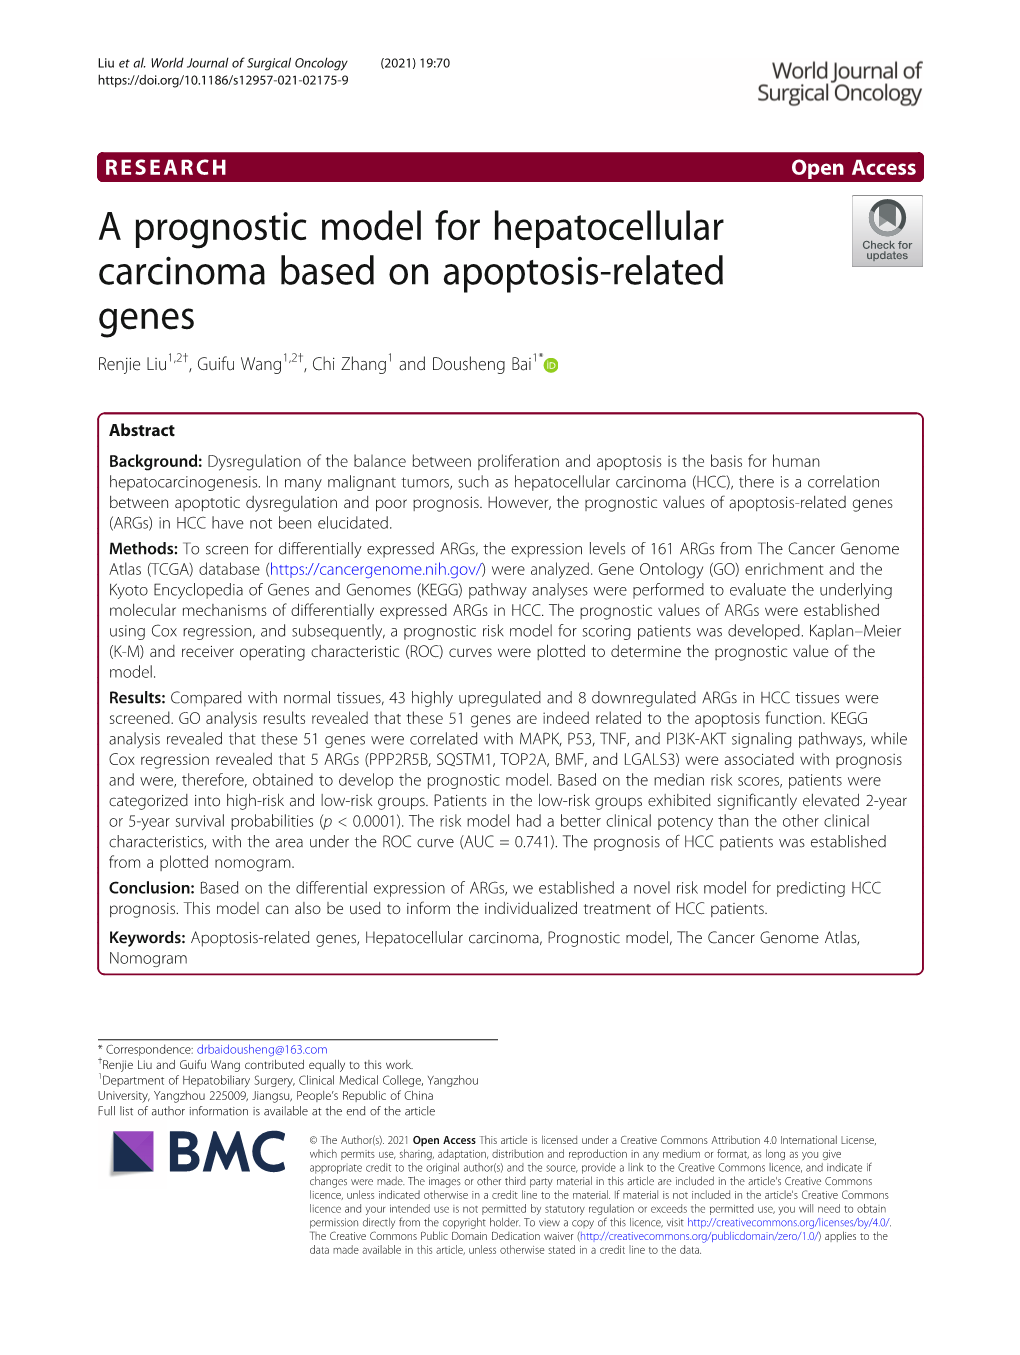 A Prognostic Model for Hepatocellular Carcinoma Based on Apoptosis-Related Genes Renjie Liu1,2†, Guifu Wang1,2†, Chi Zhang1 and Dousheng Bai1*